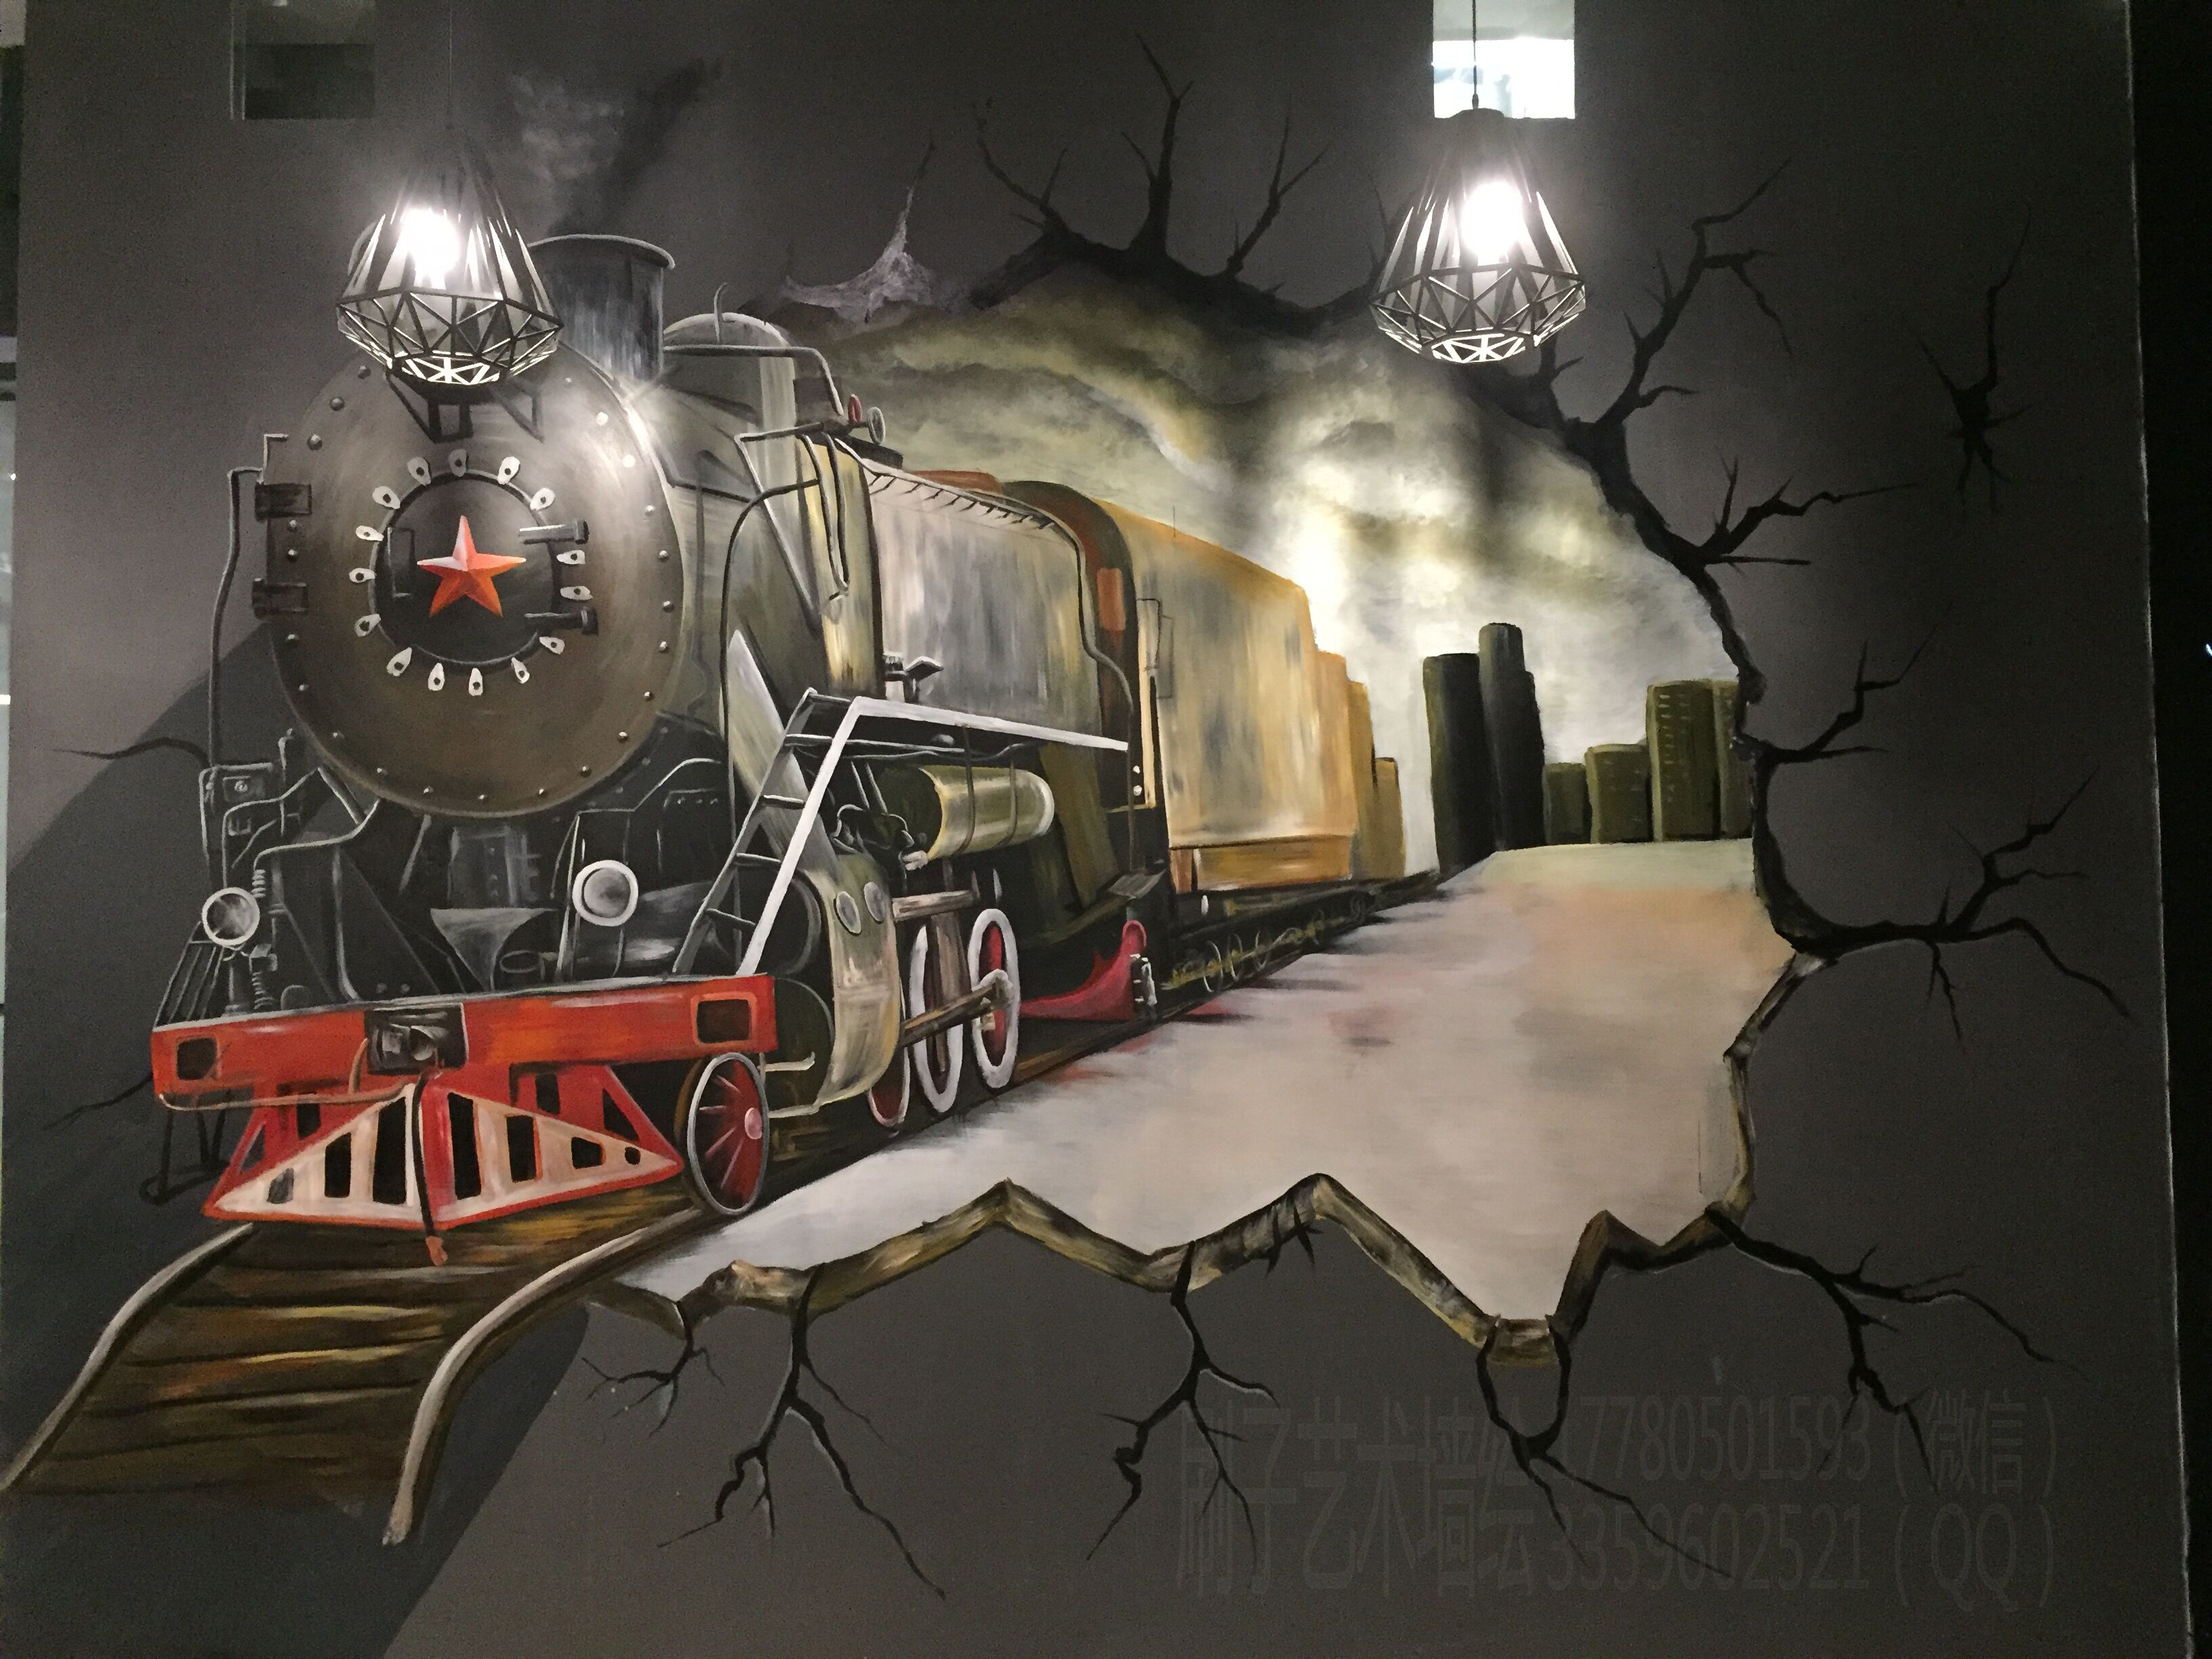 火车 工业风 墙绘 成都墙绘 刷子艺术墙绘 手绘 彩绘 3d画 涂鸦 壁画